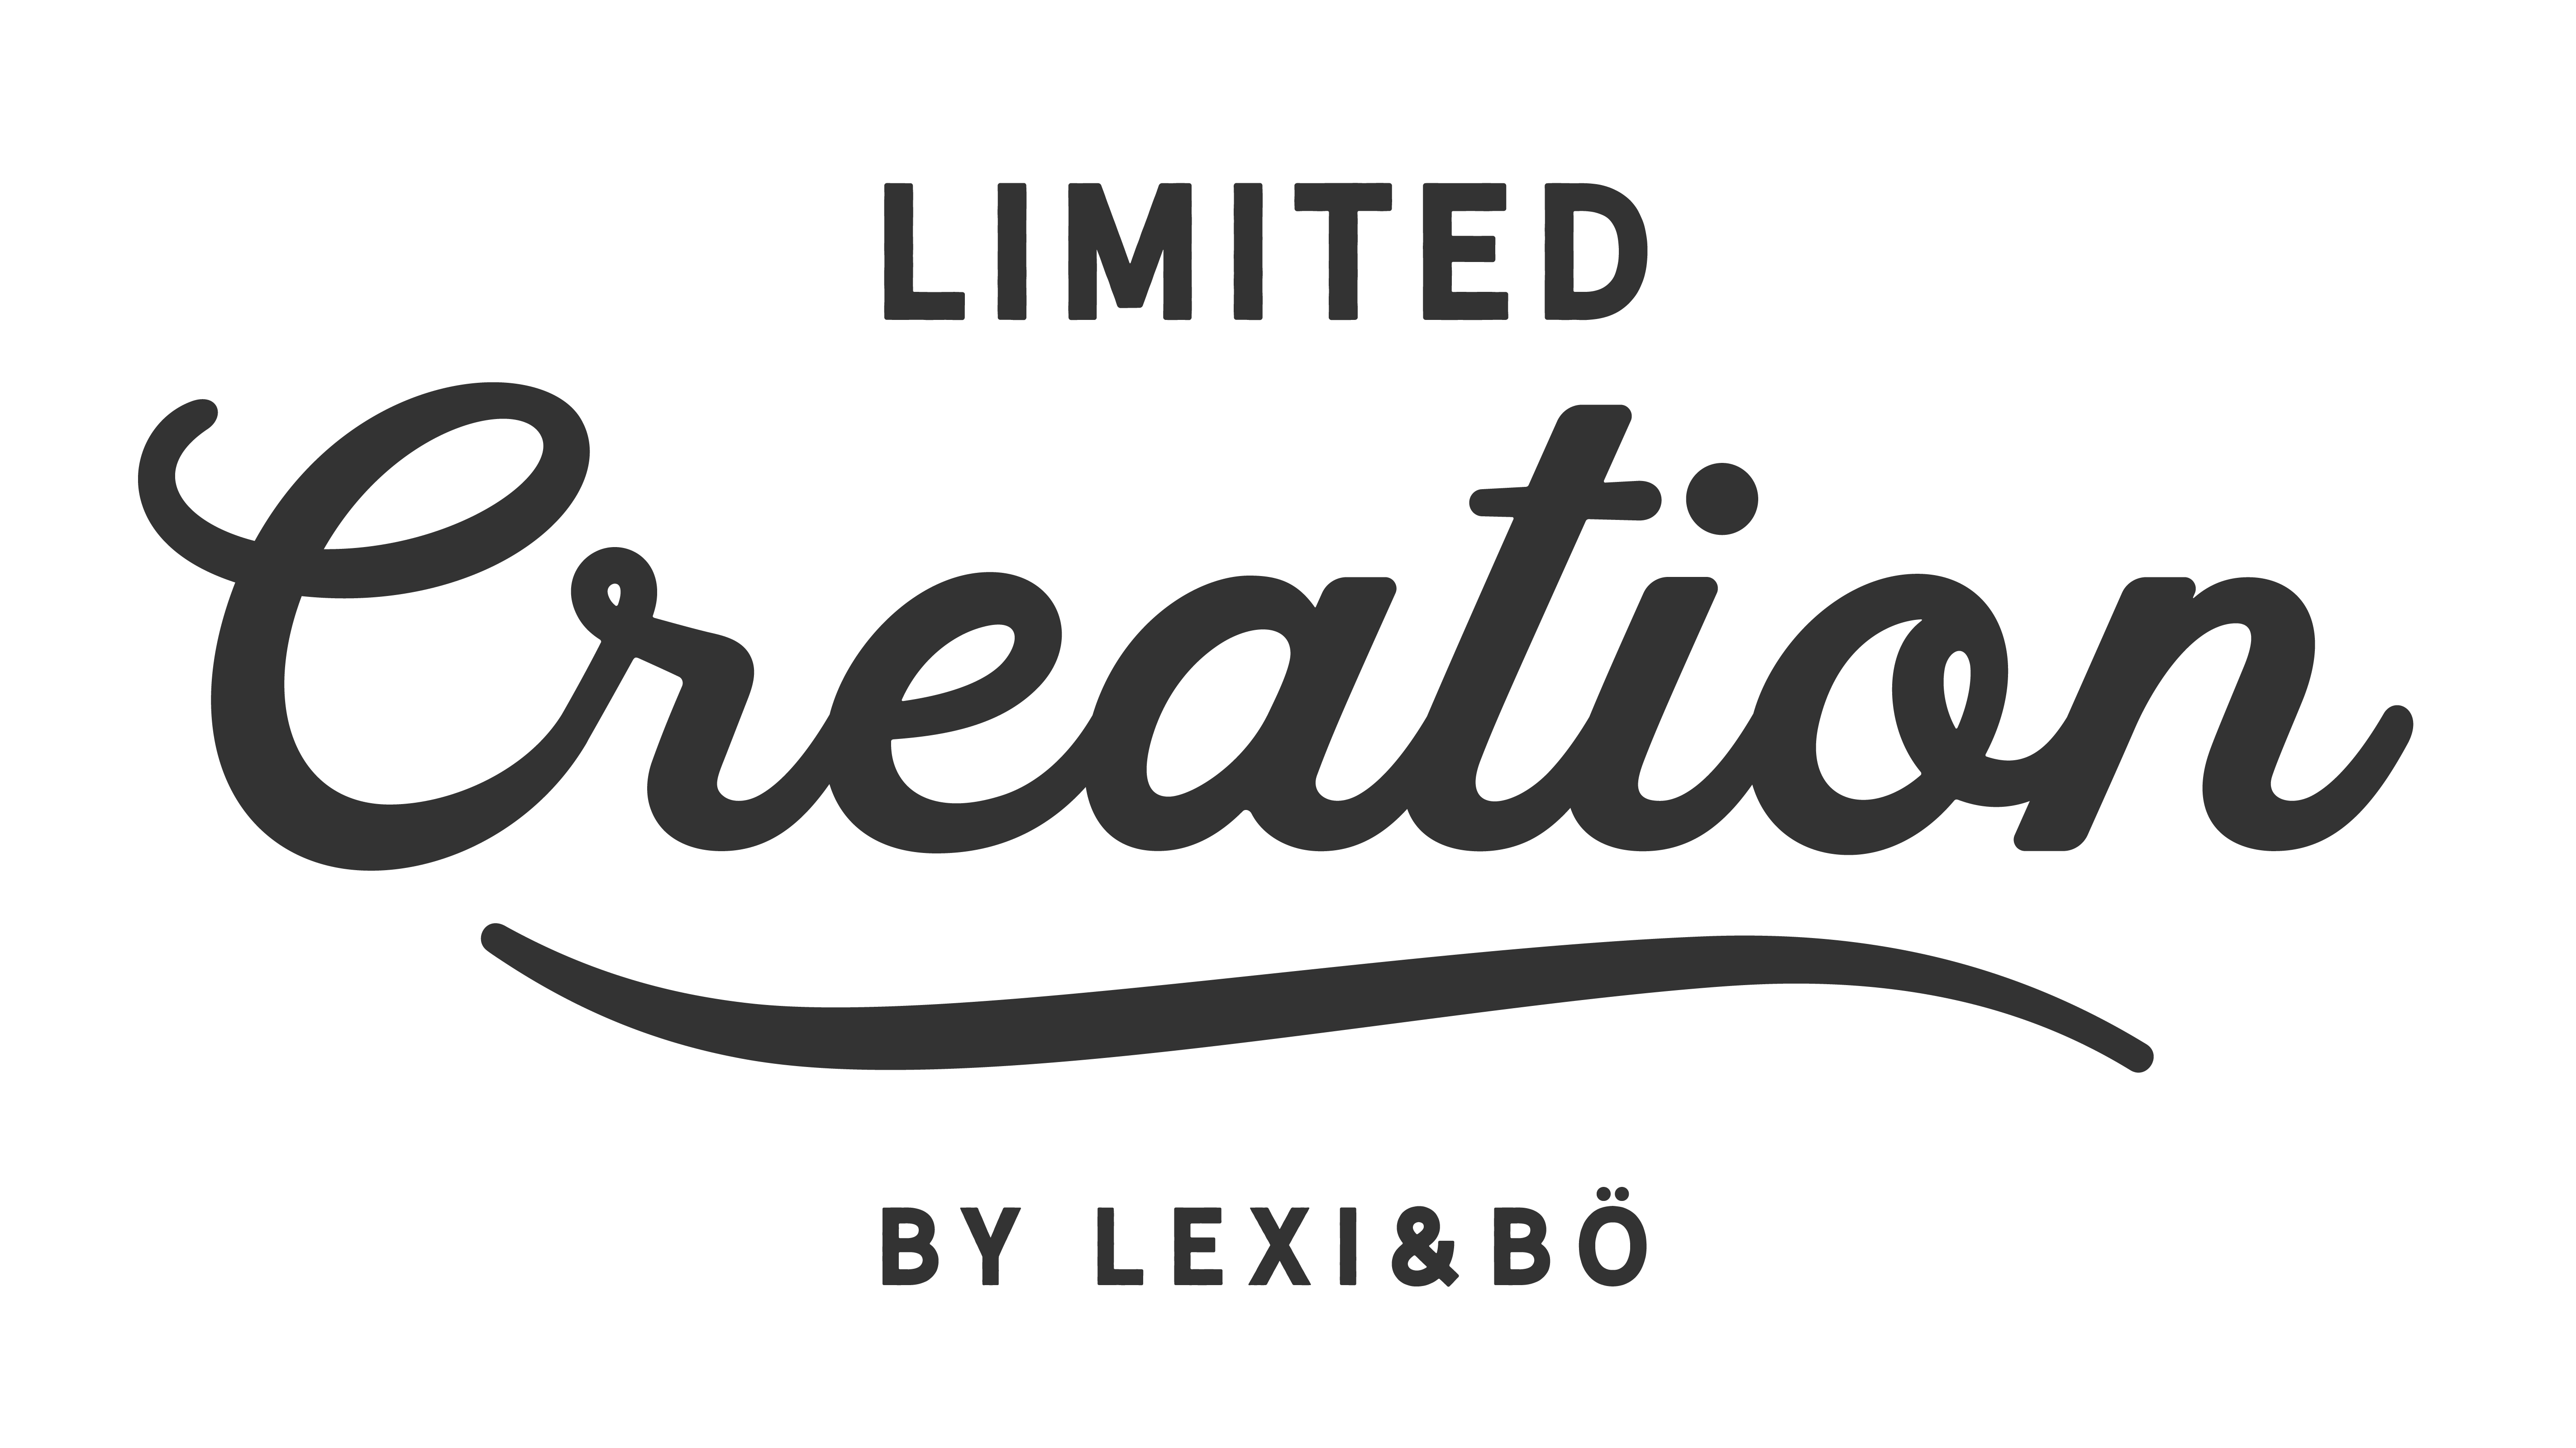 Lexi&Bö Limited Creation